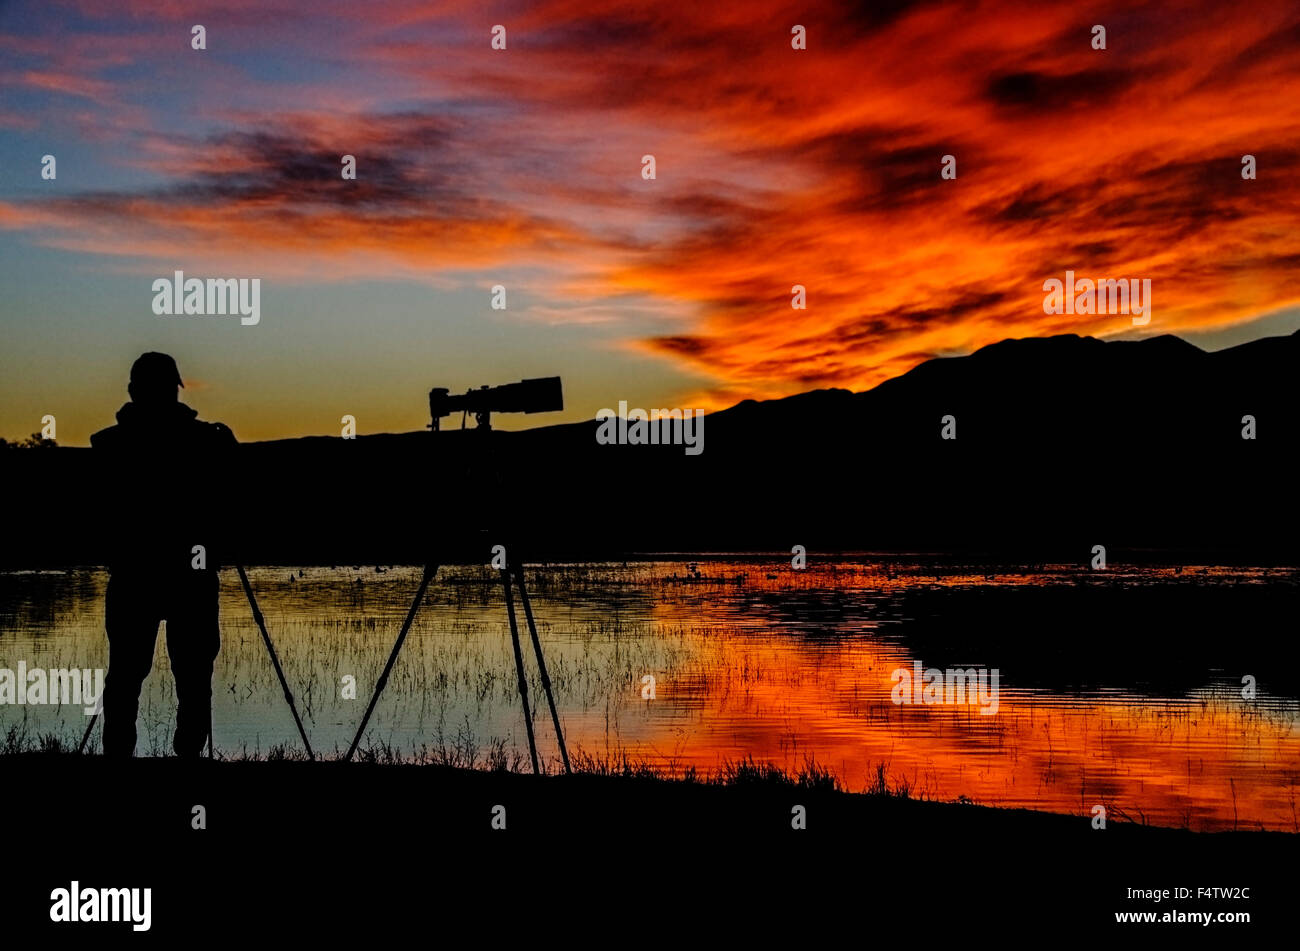 Ein Fotograf betrachtet den Sonnenuntergang, da sie in einen Schlafplatz Teich Bosque del Apache Wildlife Refuge ein wandernder widerspiegelt Stockfoto